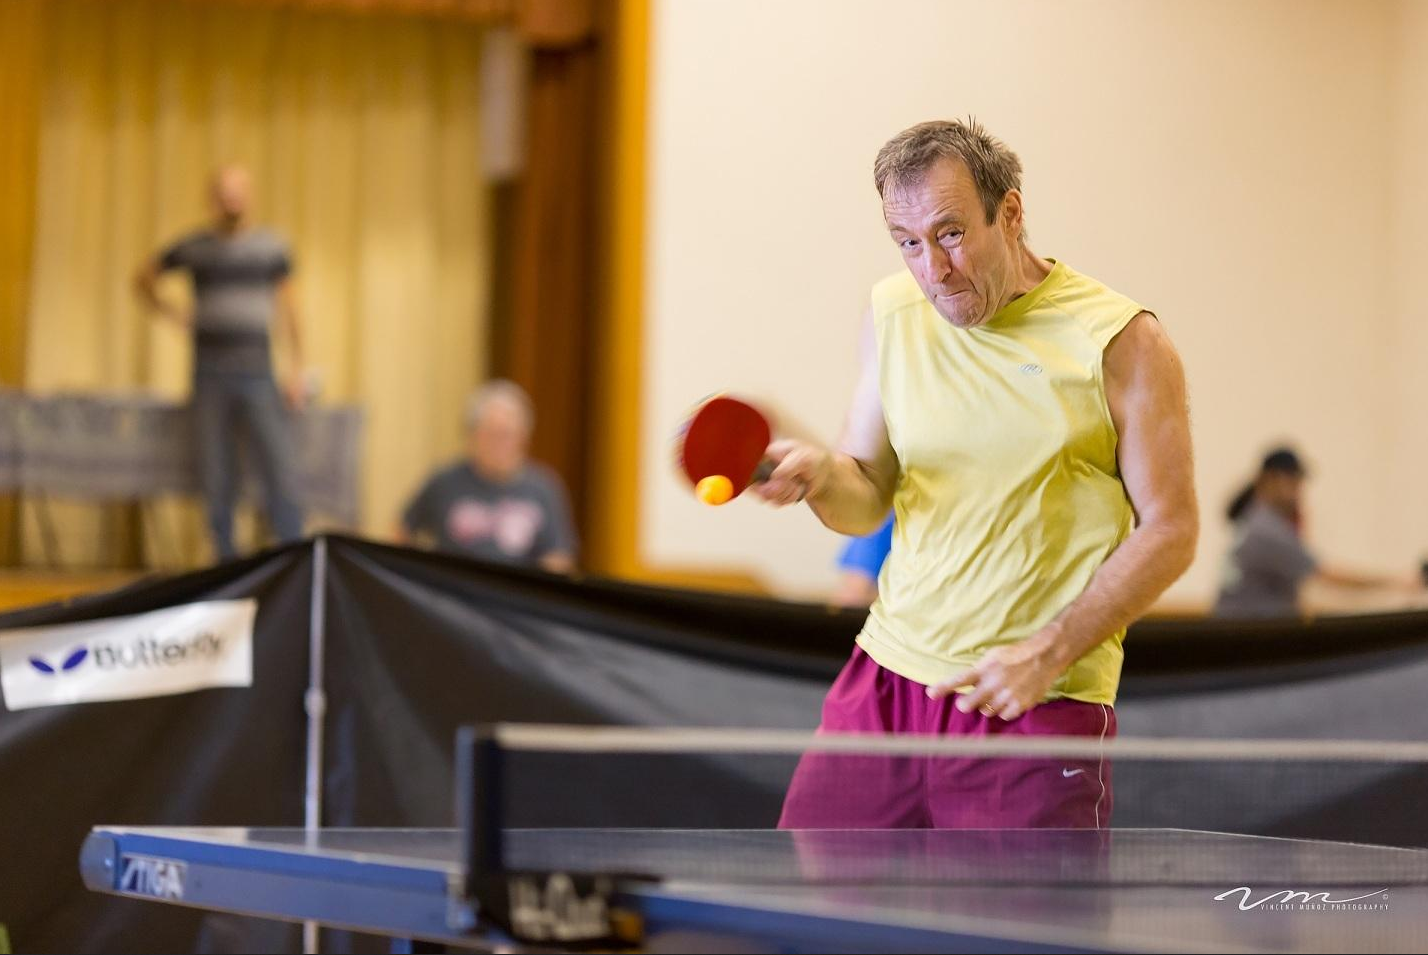 man wearing yellow shirt playing ping pong